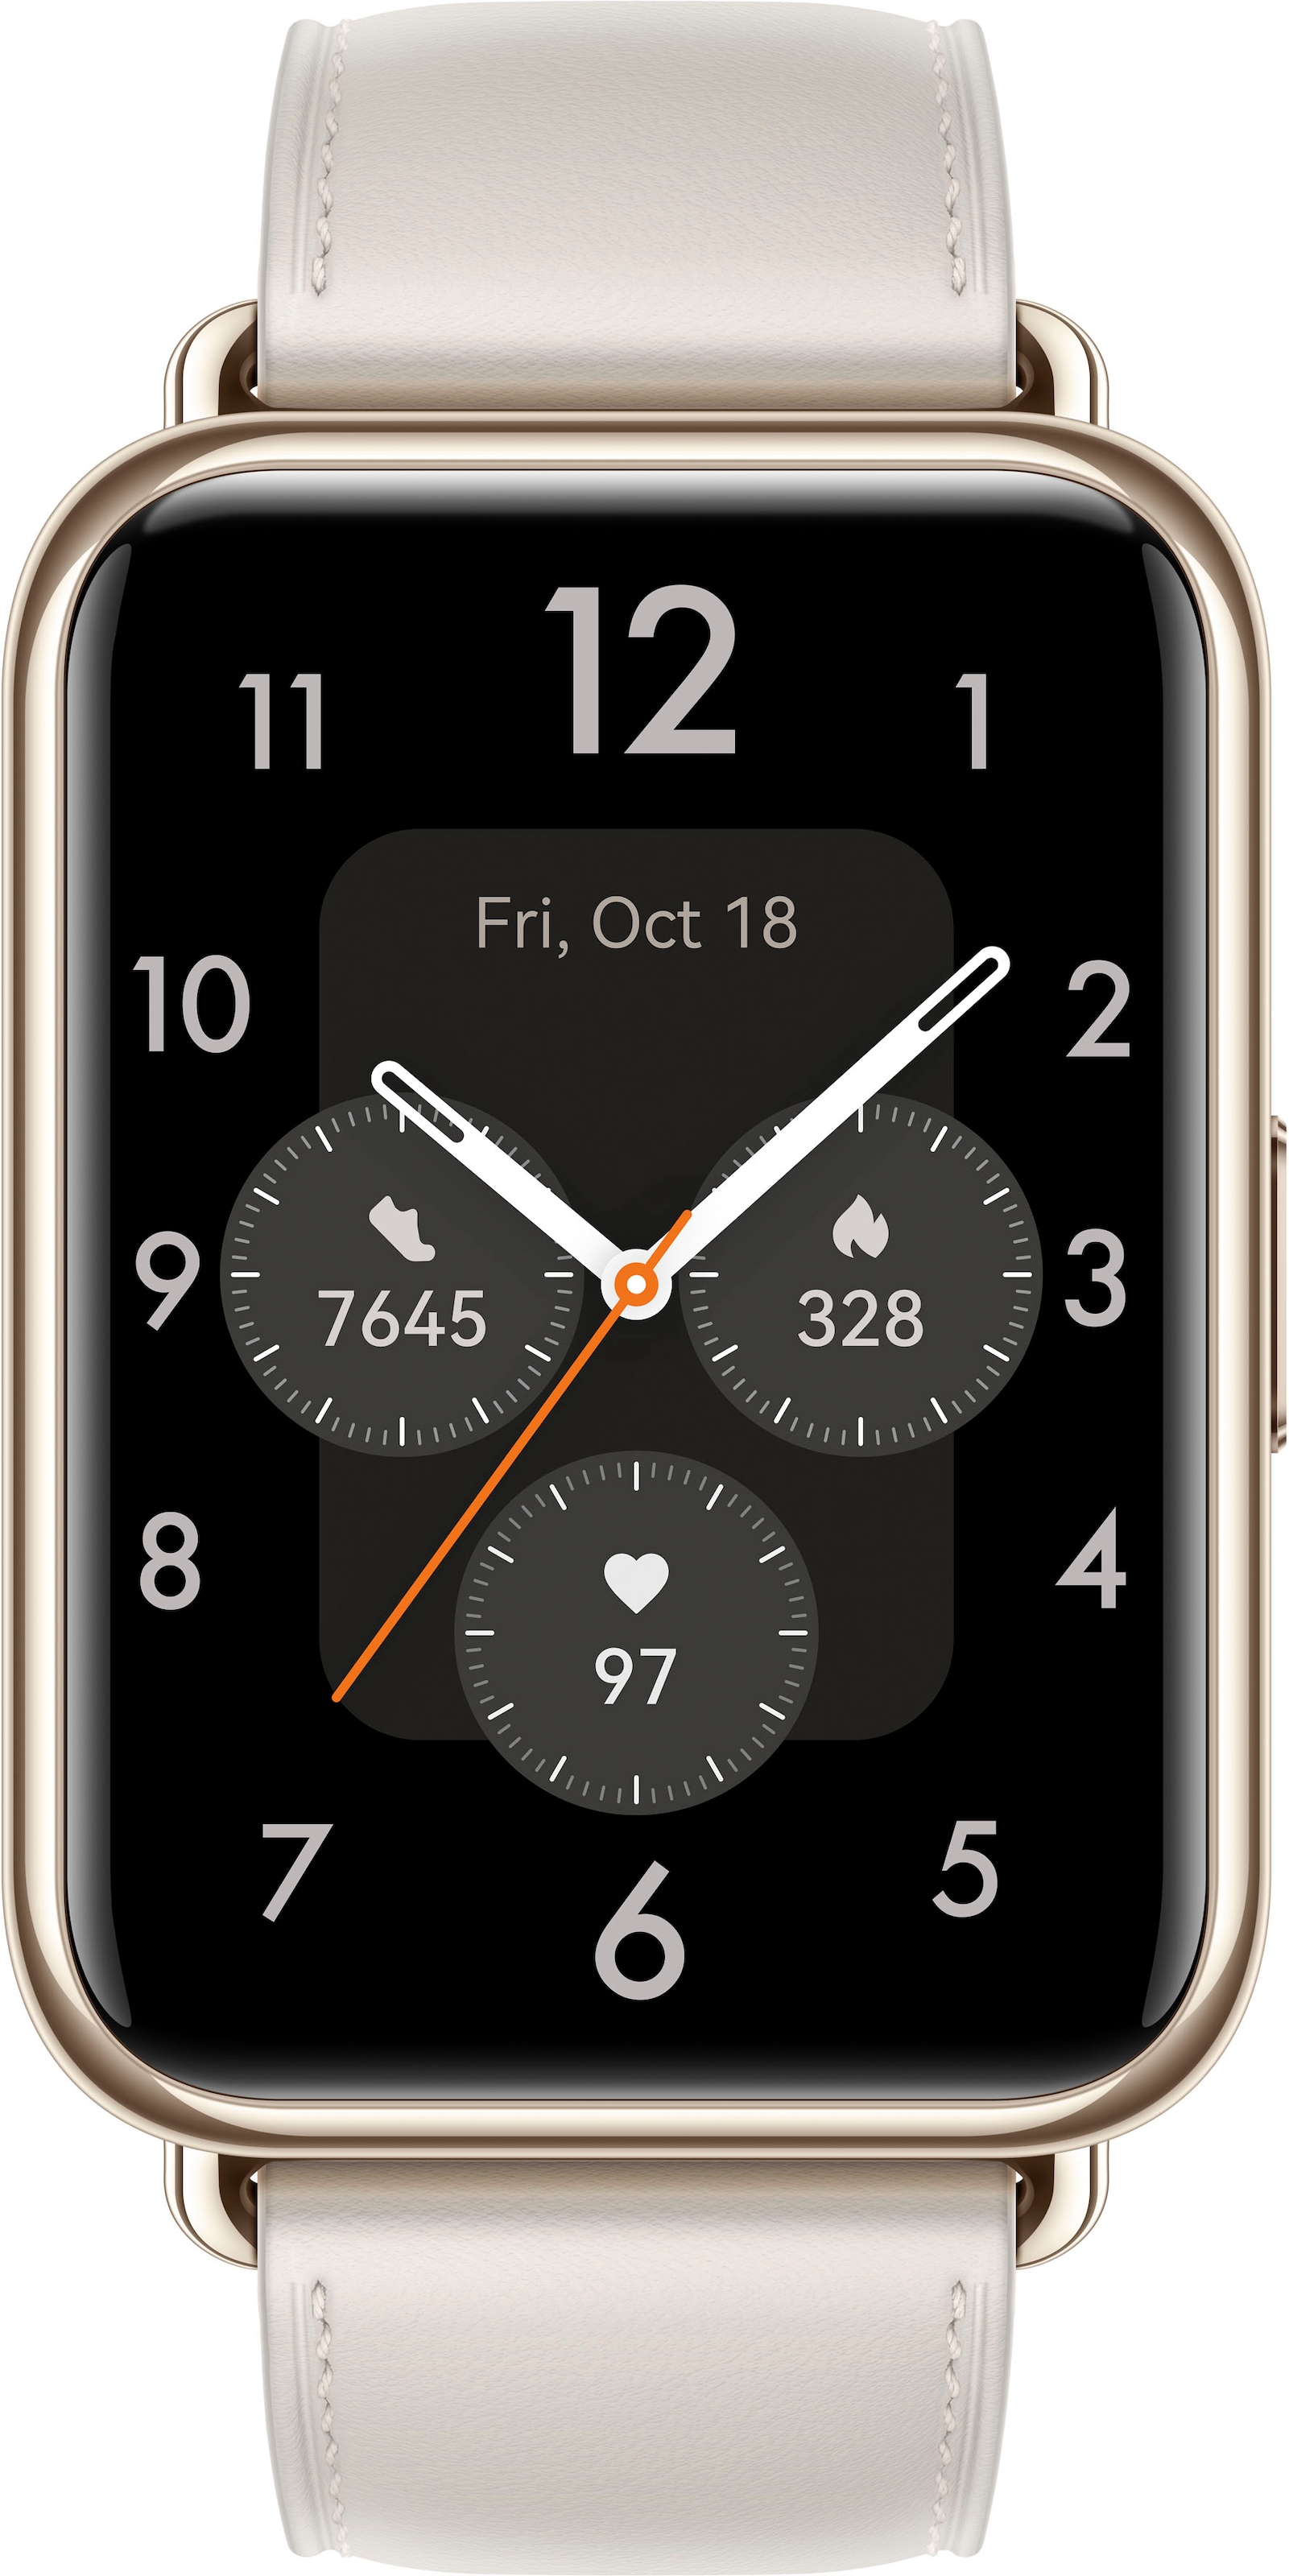 Huawei Smartwatch »Watch Fit im Herstellergarantie) Jahre (3 2«, Online-Shop bestellen